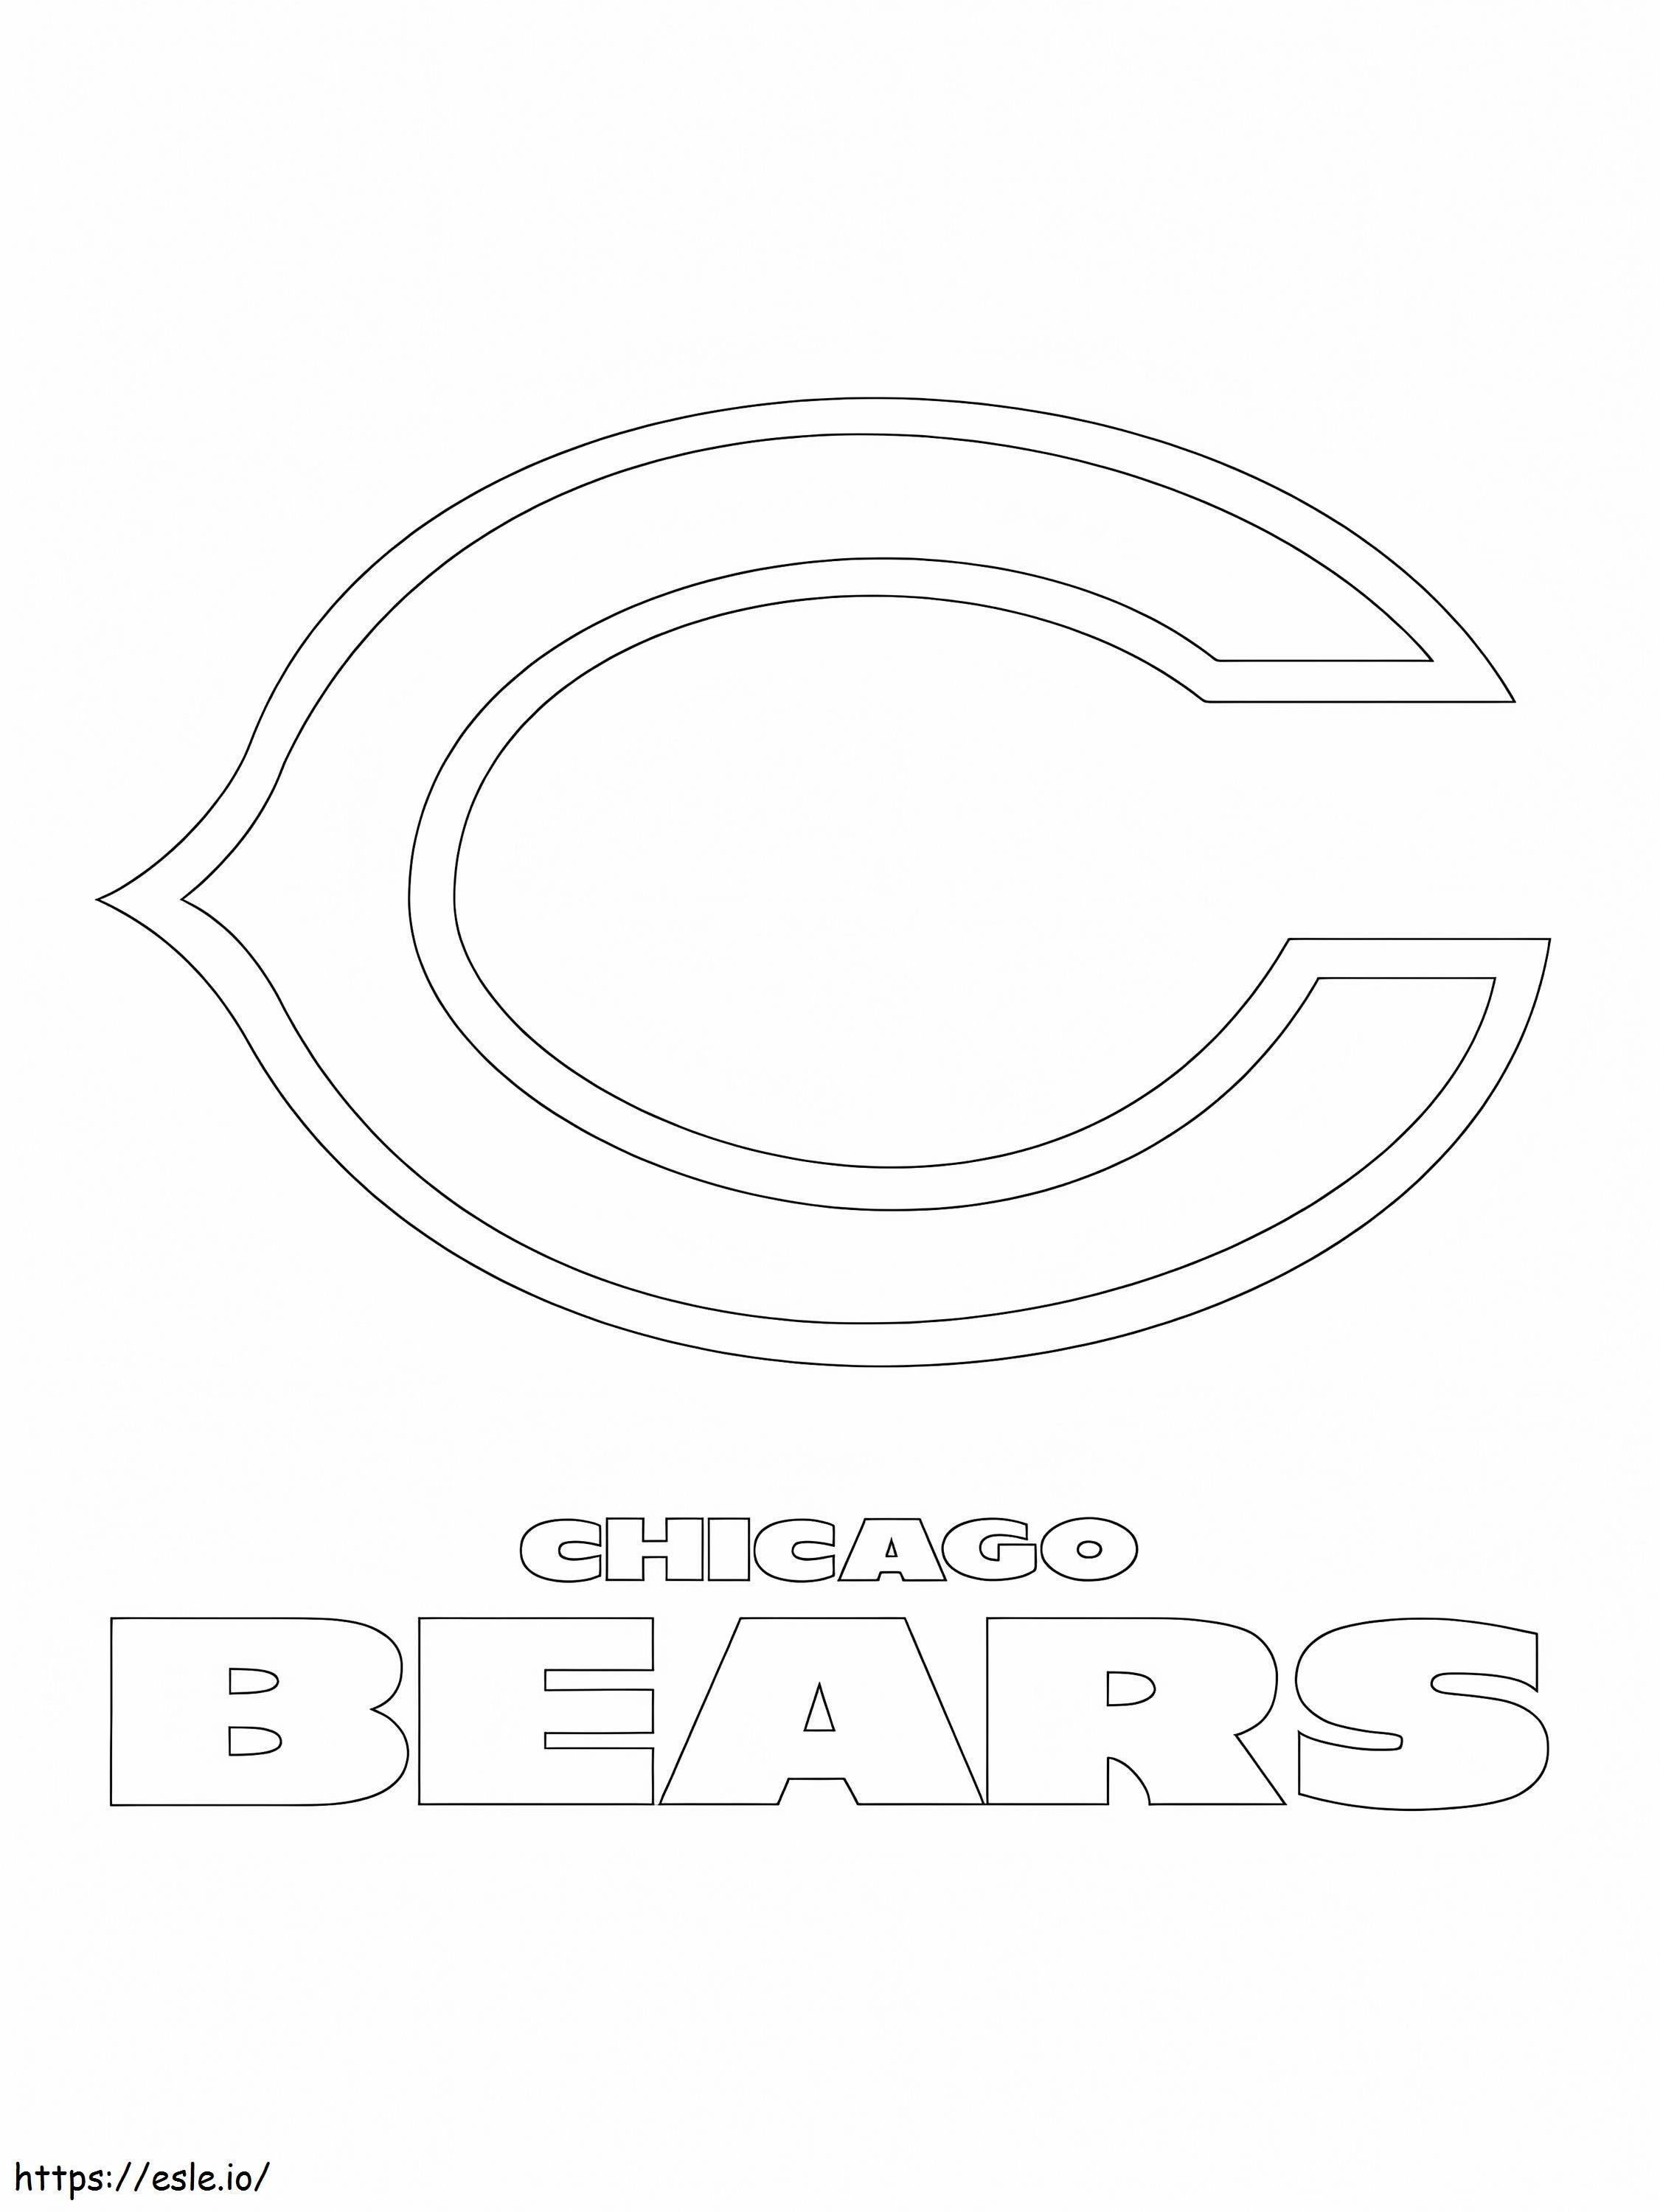 Chicago Bears-Logo ausmalbilder